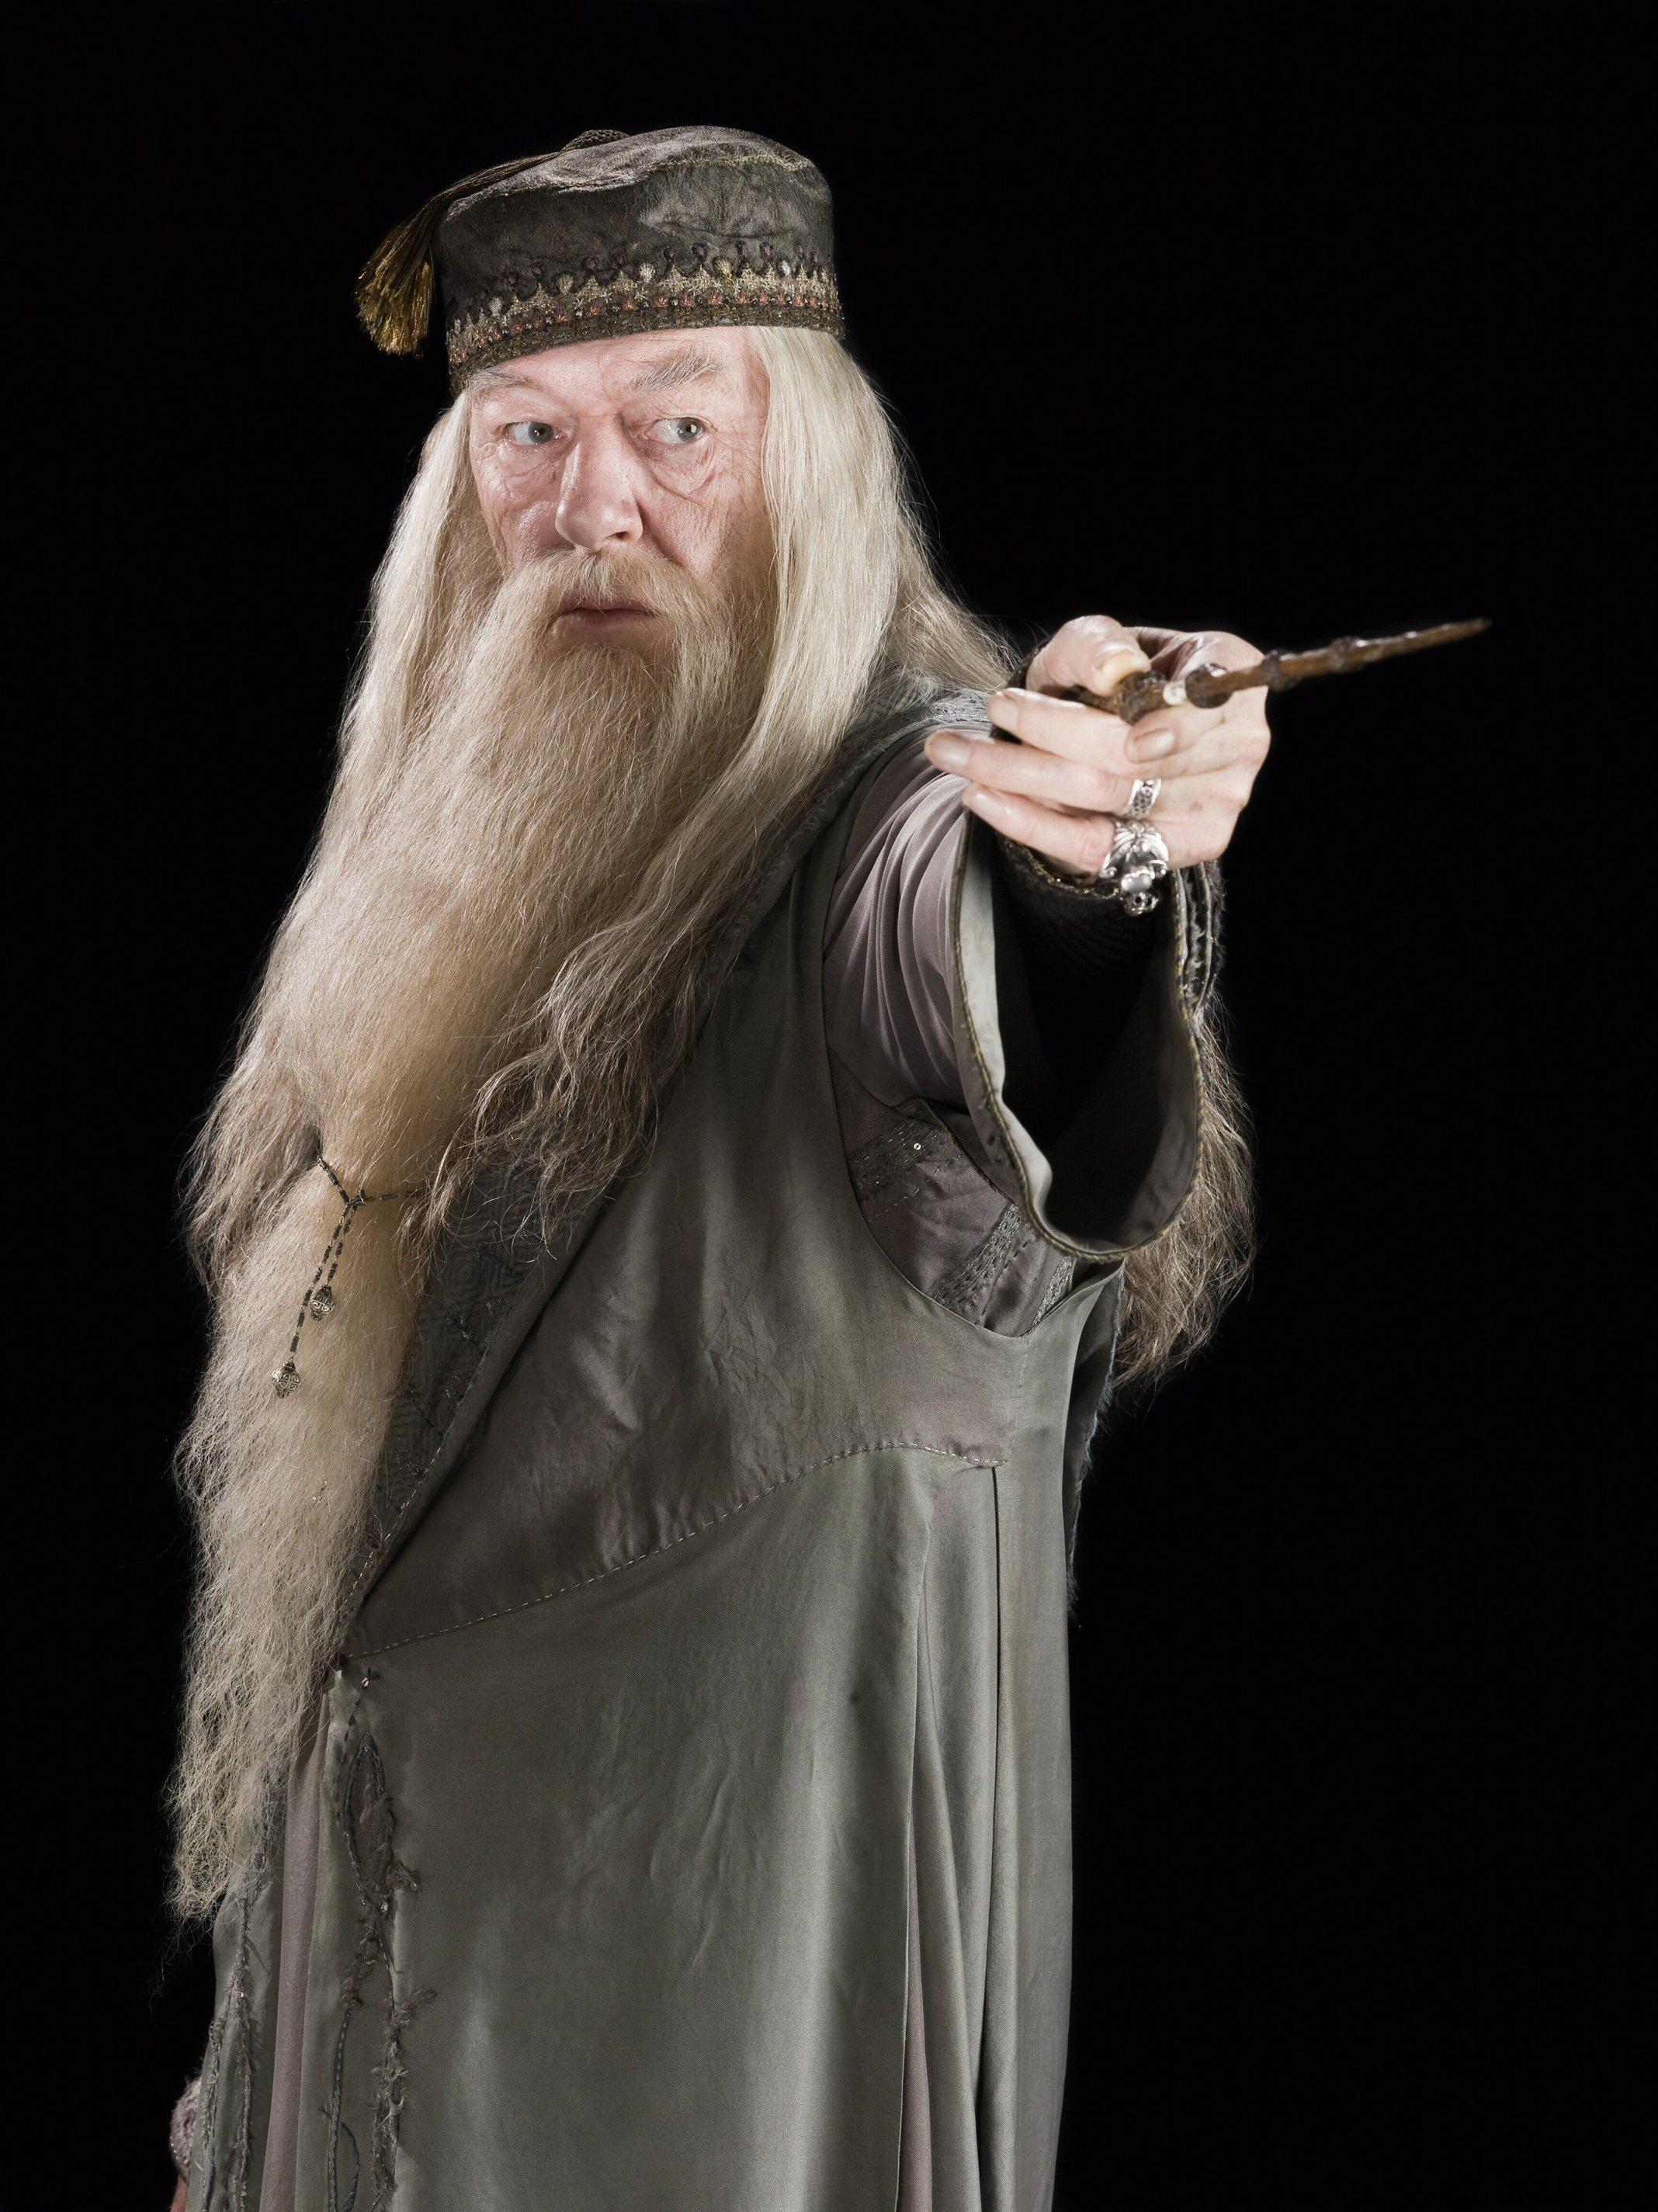 dumbledore varita de sauco